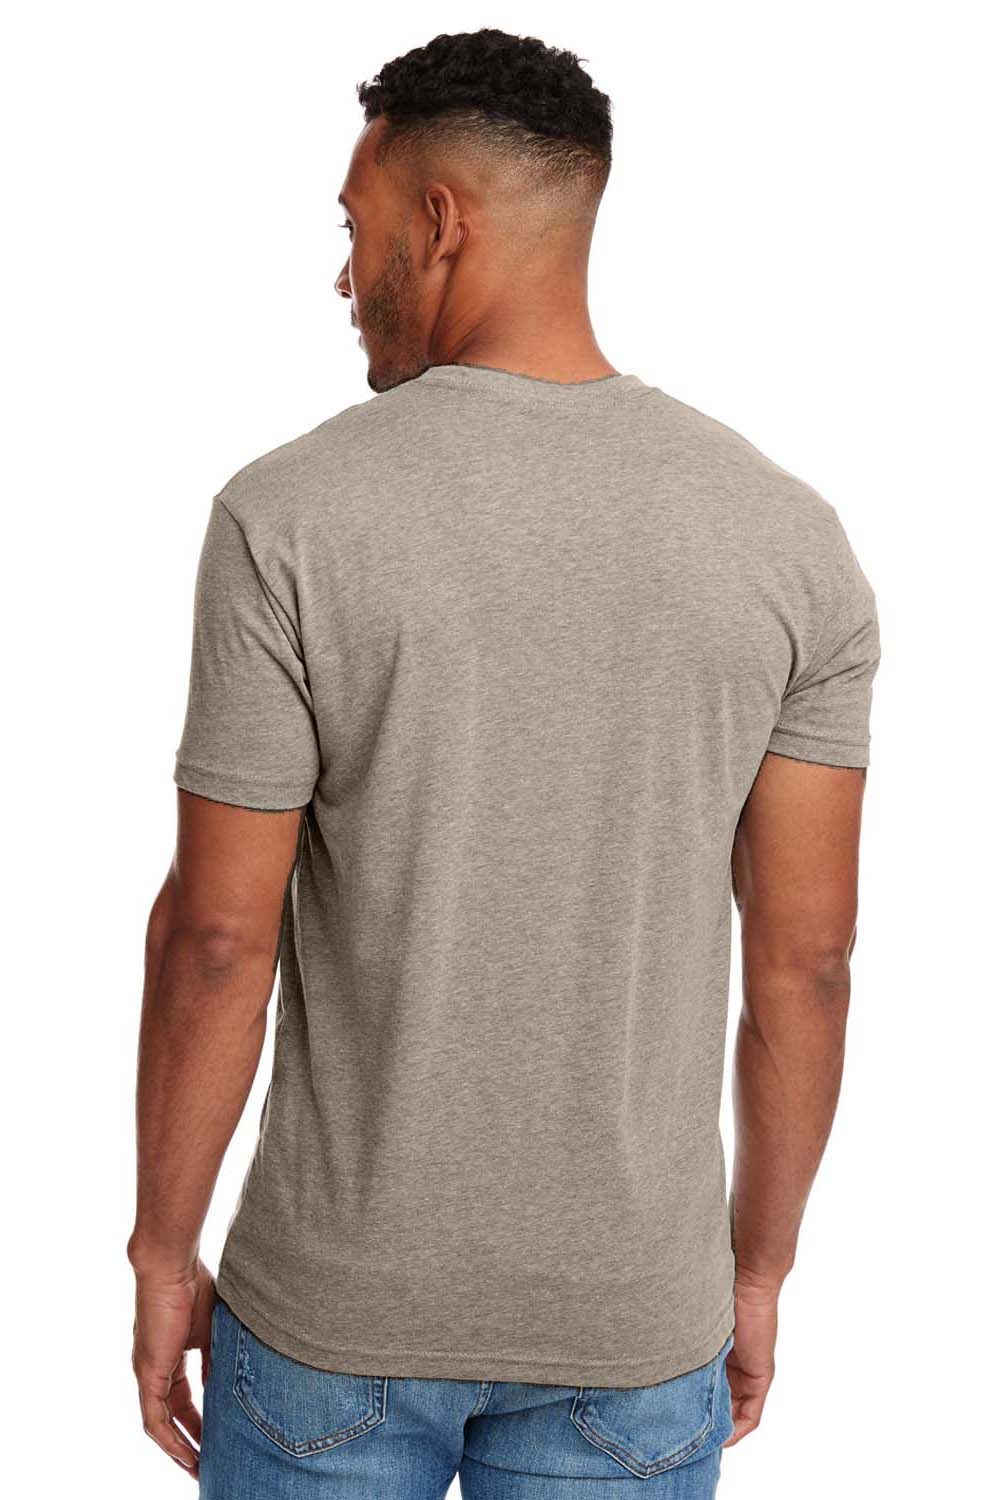 Next Level N6210 Mens CVC Jersey Short Sleeve Crewneck T-Shirt Stone Grey Back